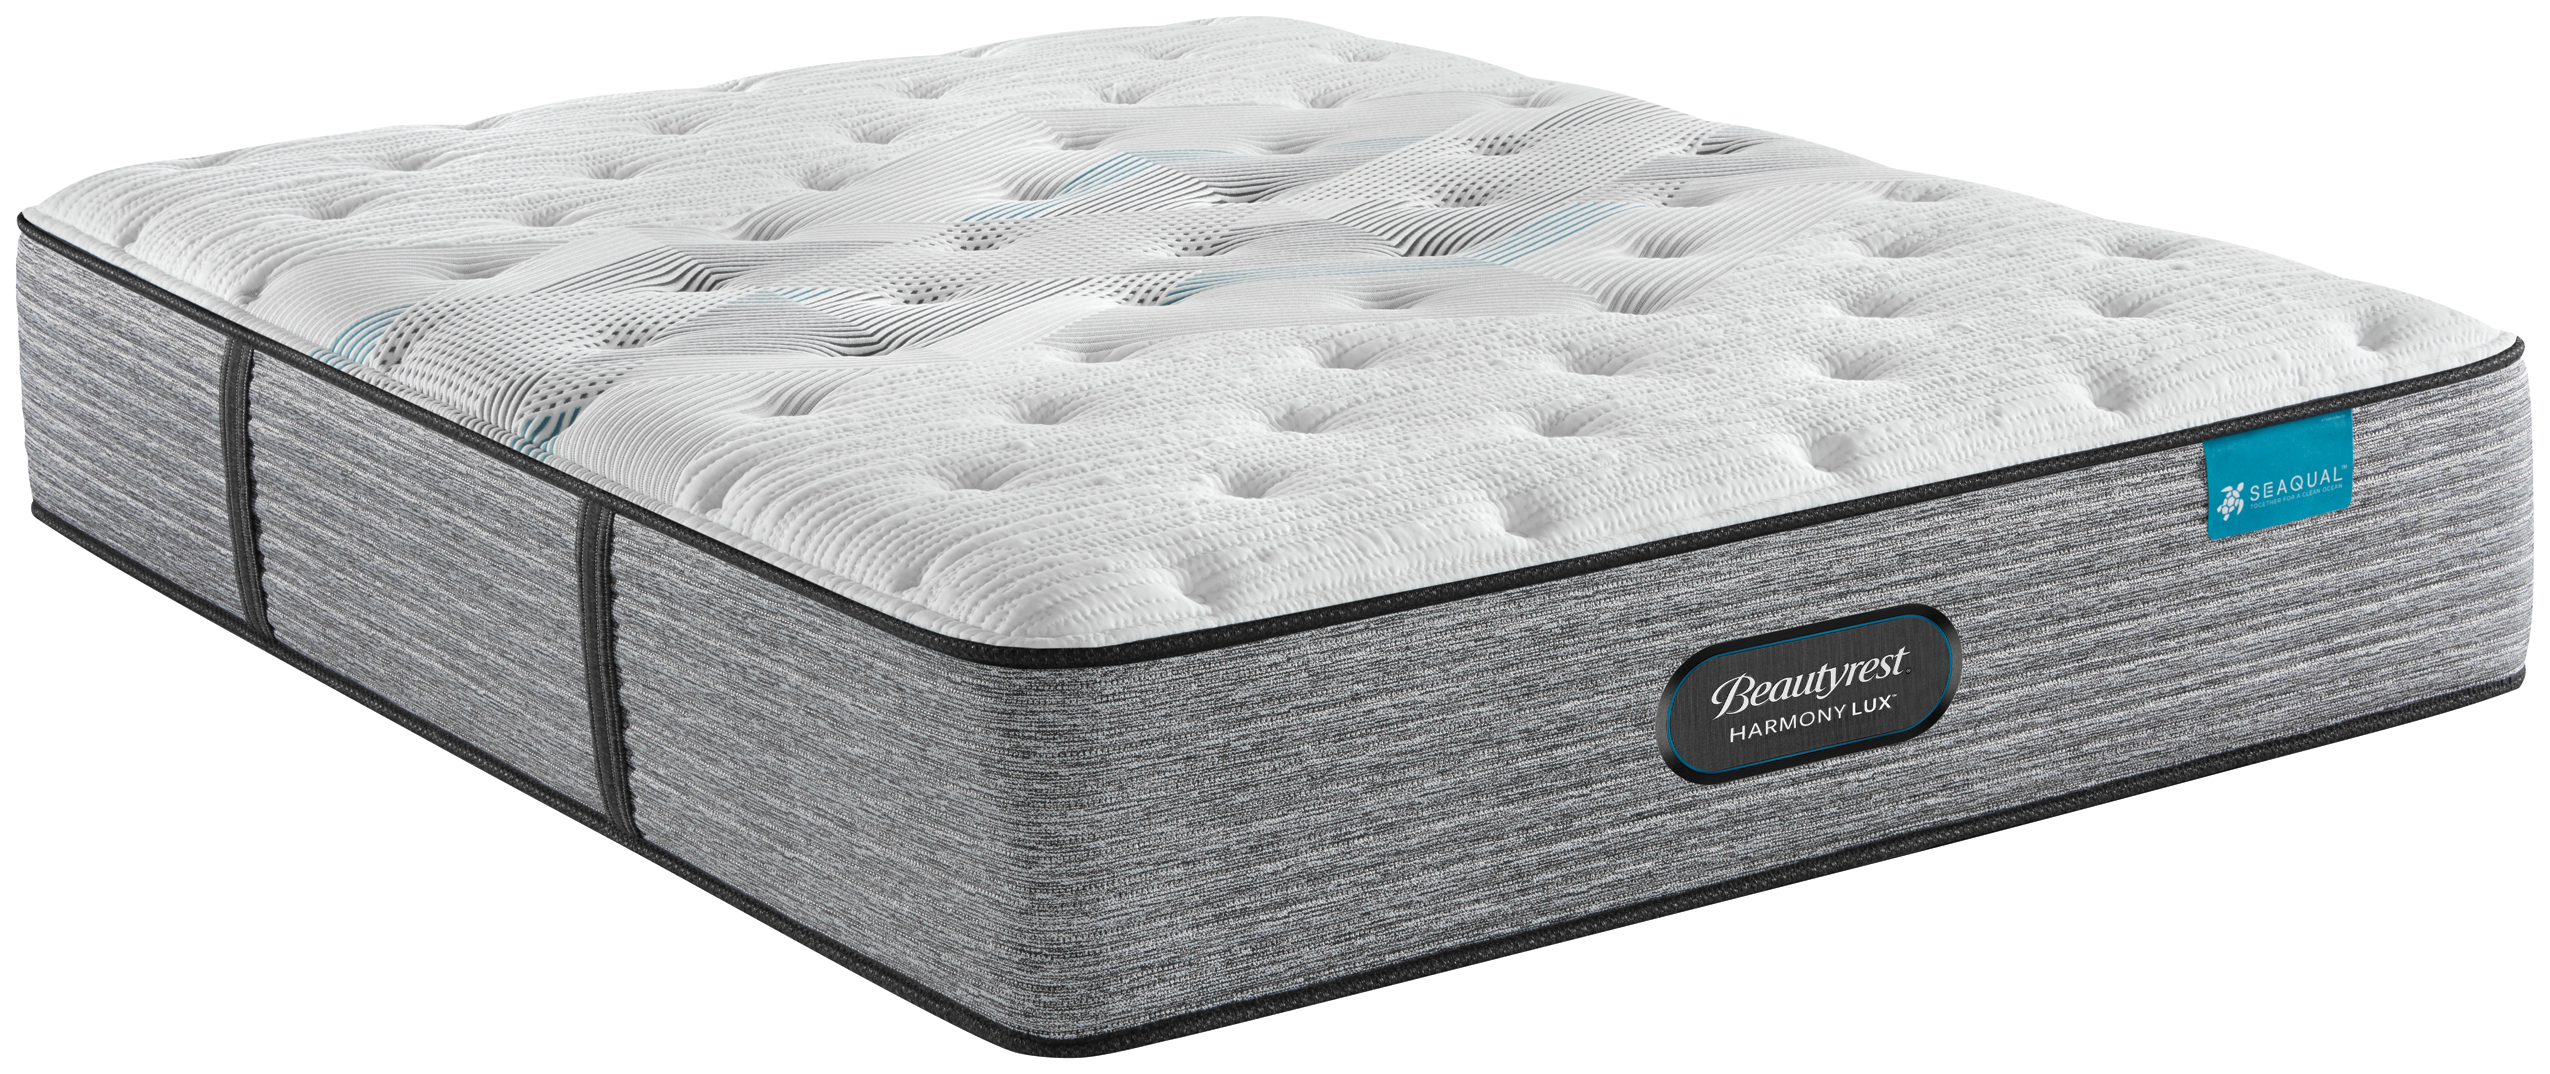 pressure smart extra firm mattress